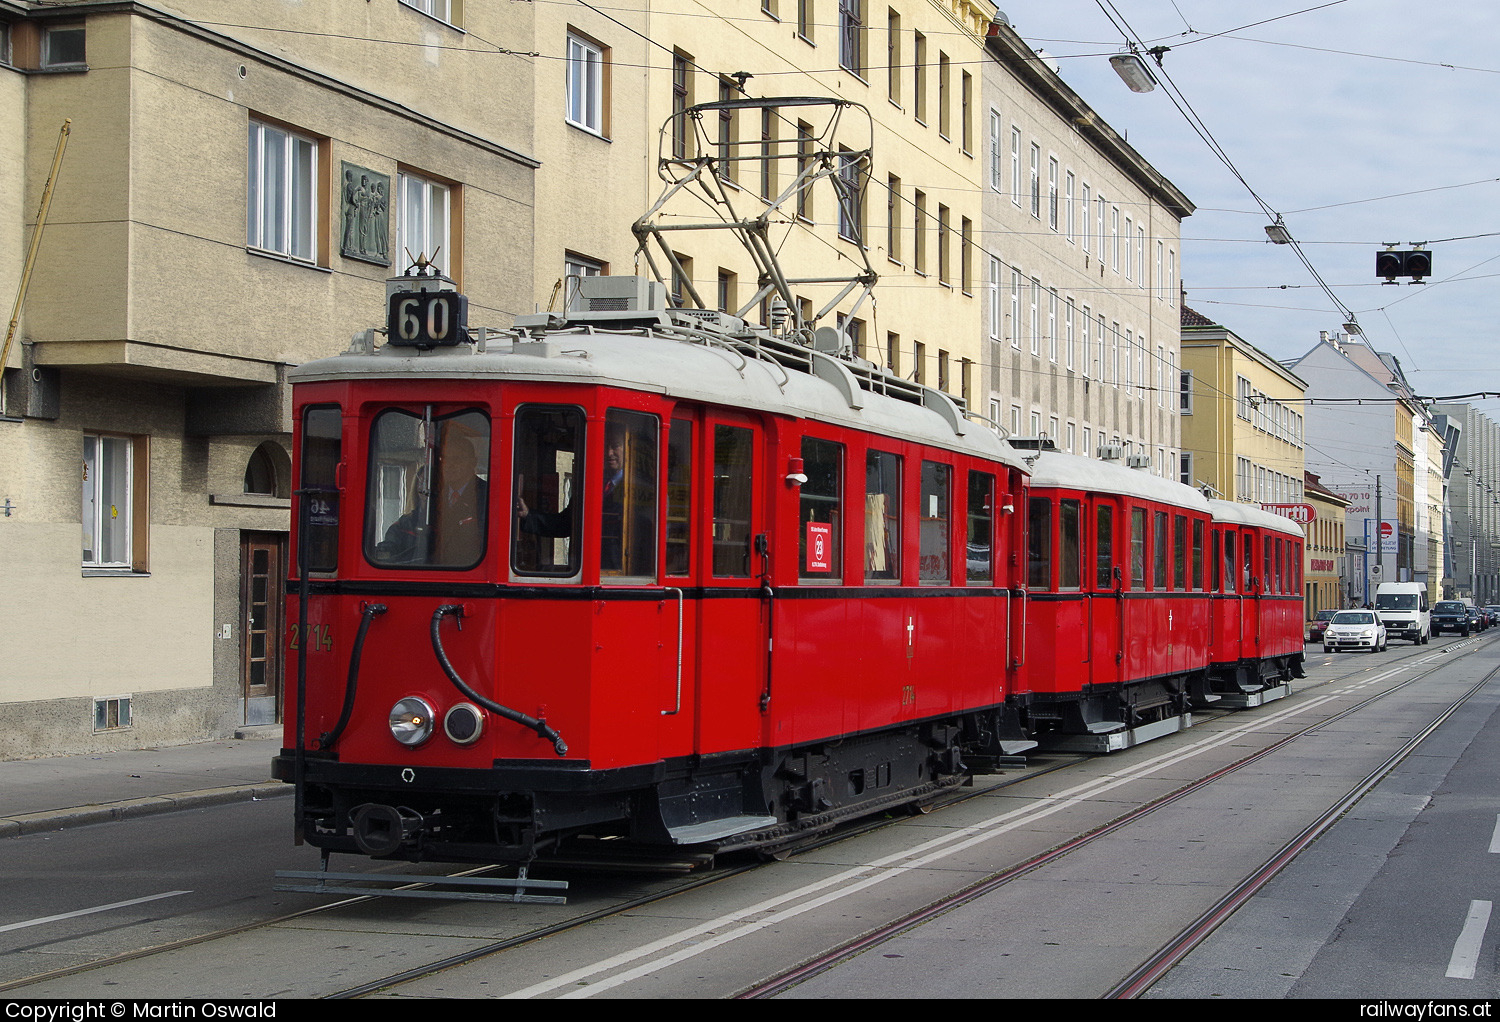 WTM N(60) 2714 in Schlachthausgasse - + n1 5814 + n1 5786. Zufahrt zur Zugsparade 150 Jahre Straßenbahn in Wien am Ring.   Railwayfans